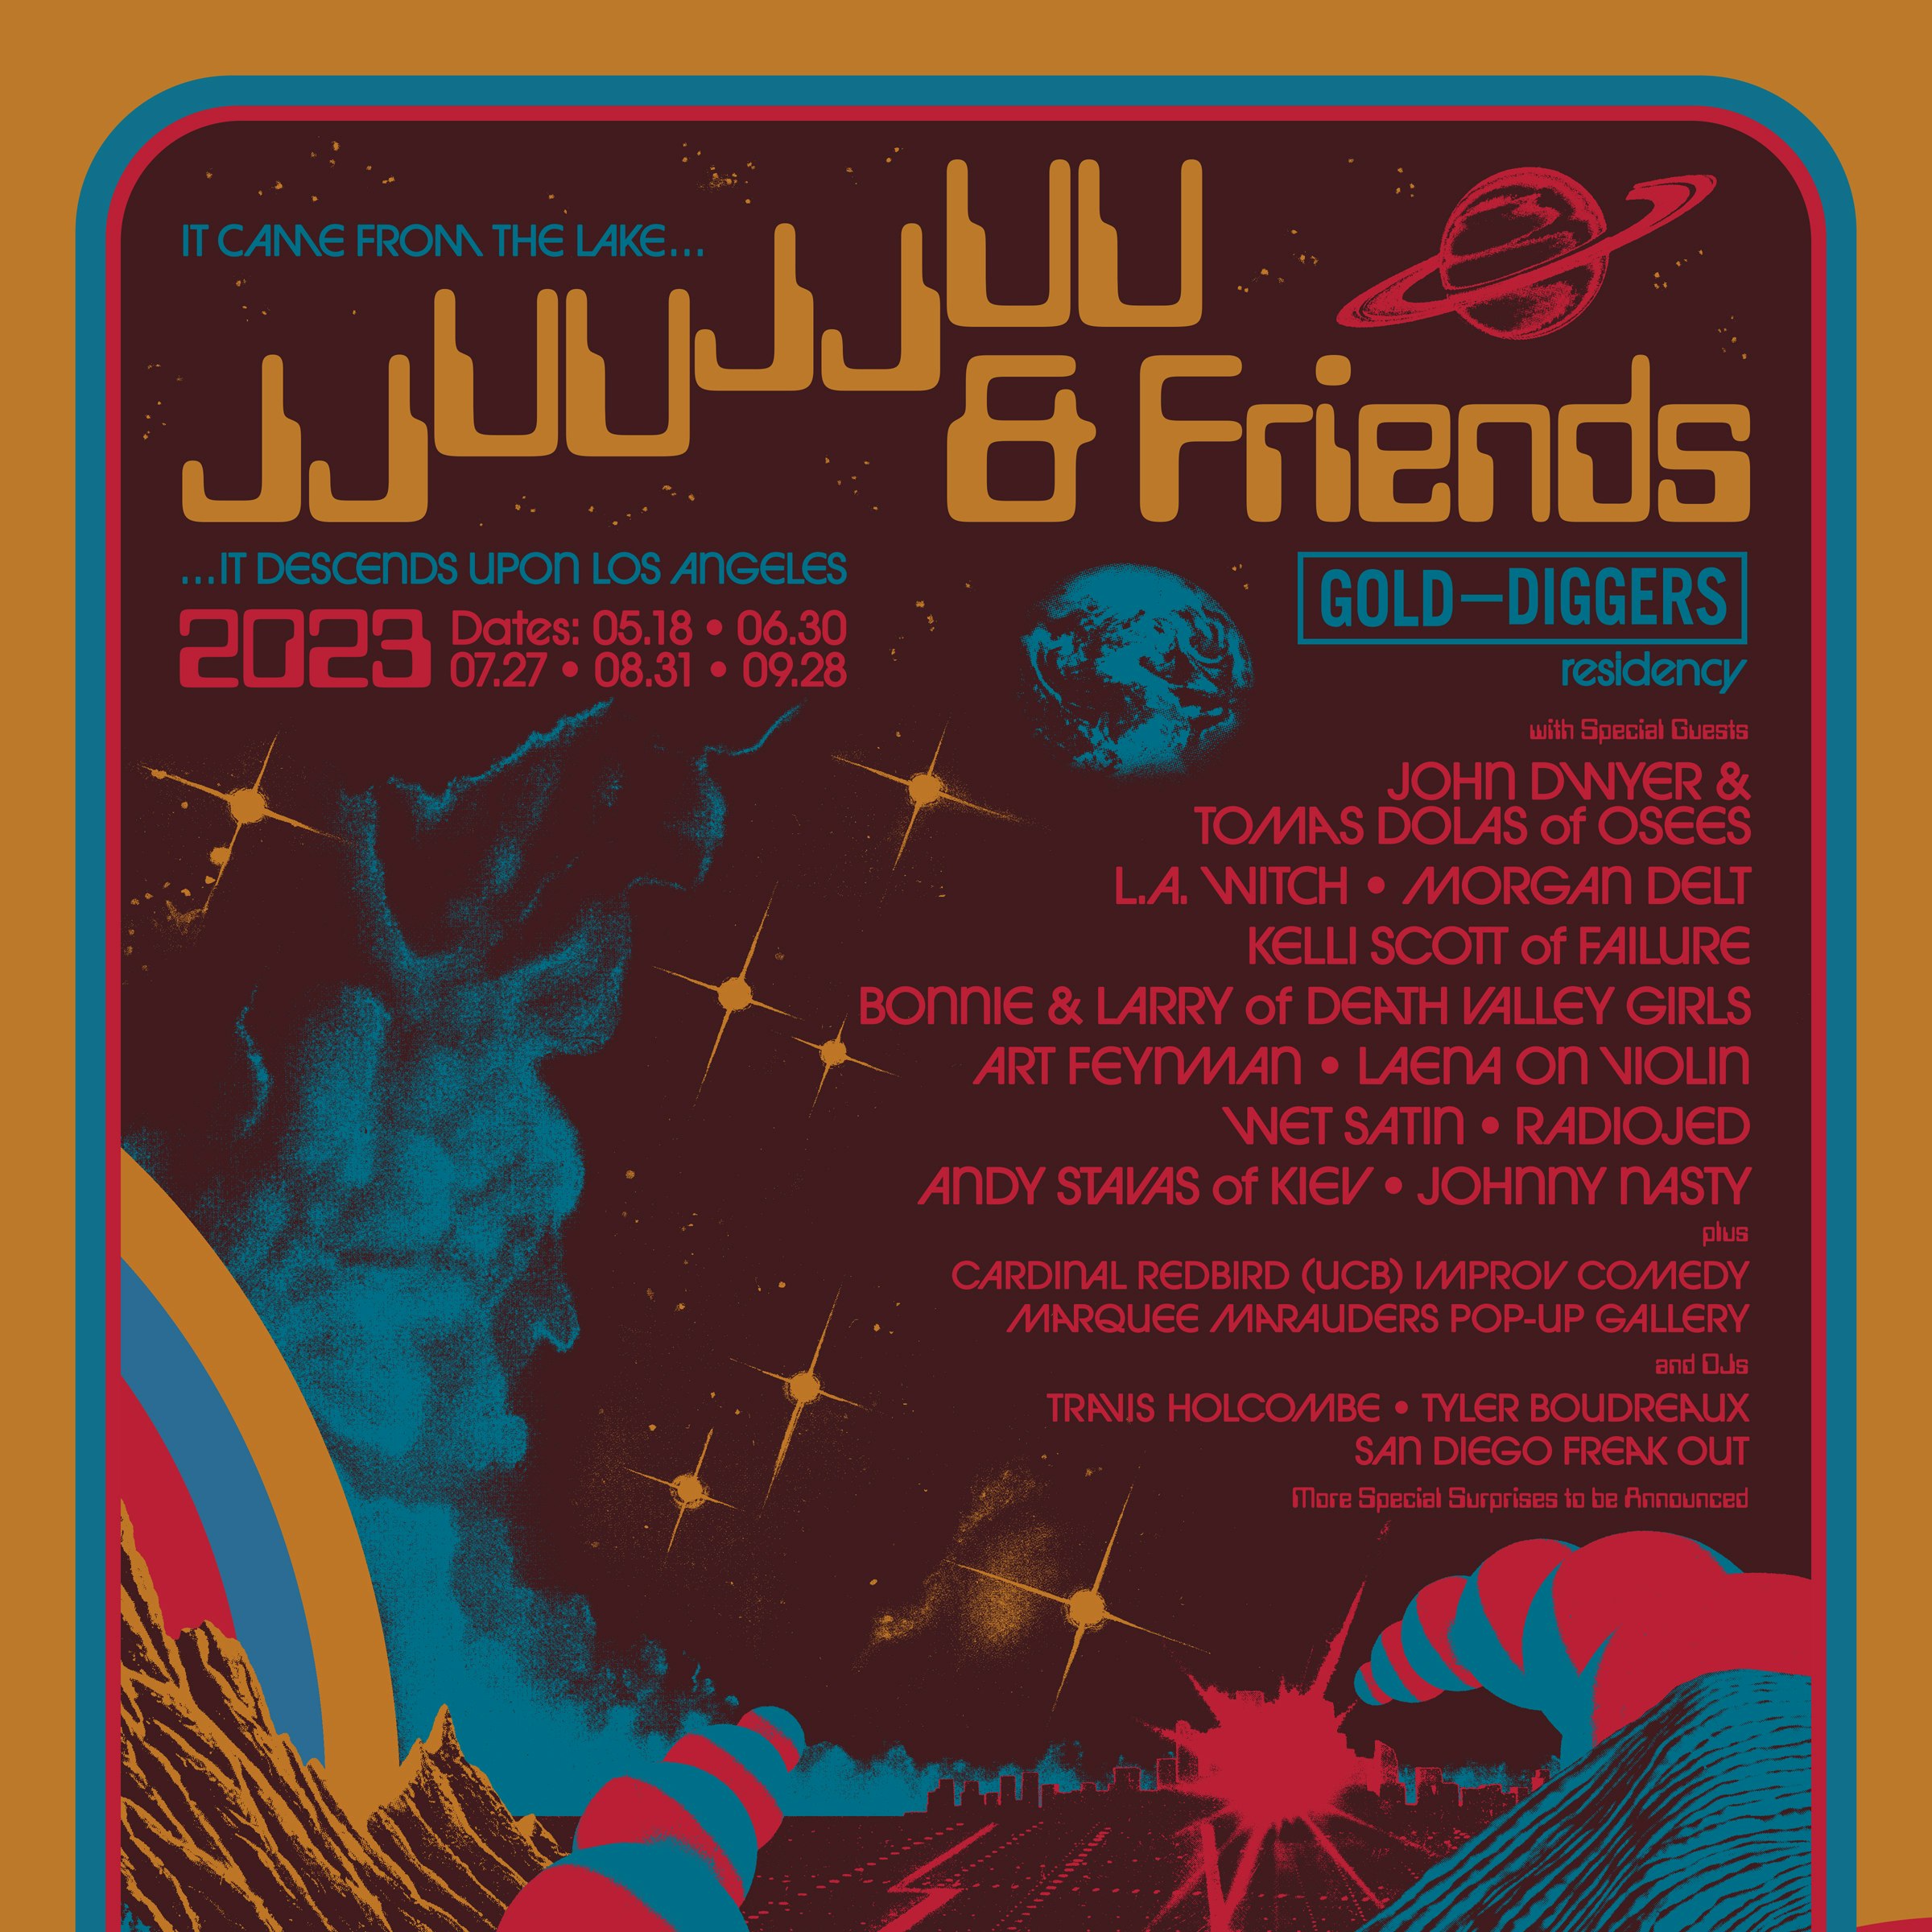 JJUUJJUU & FRIENDS (Art Feynman, Radiojed + More)